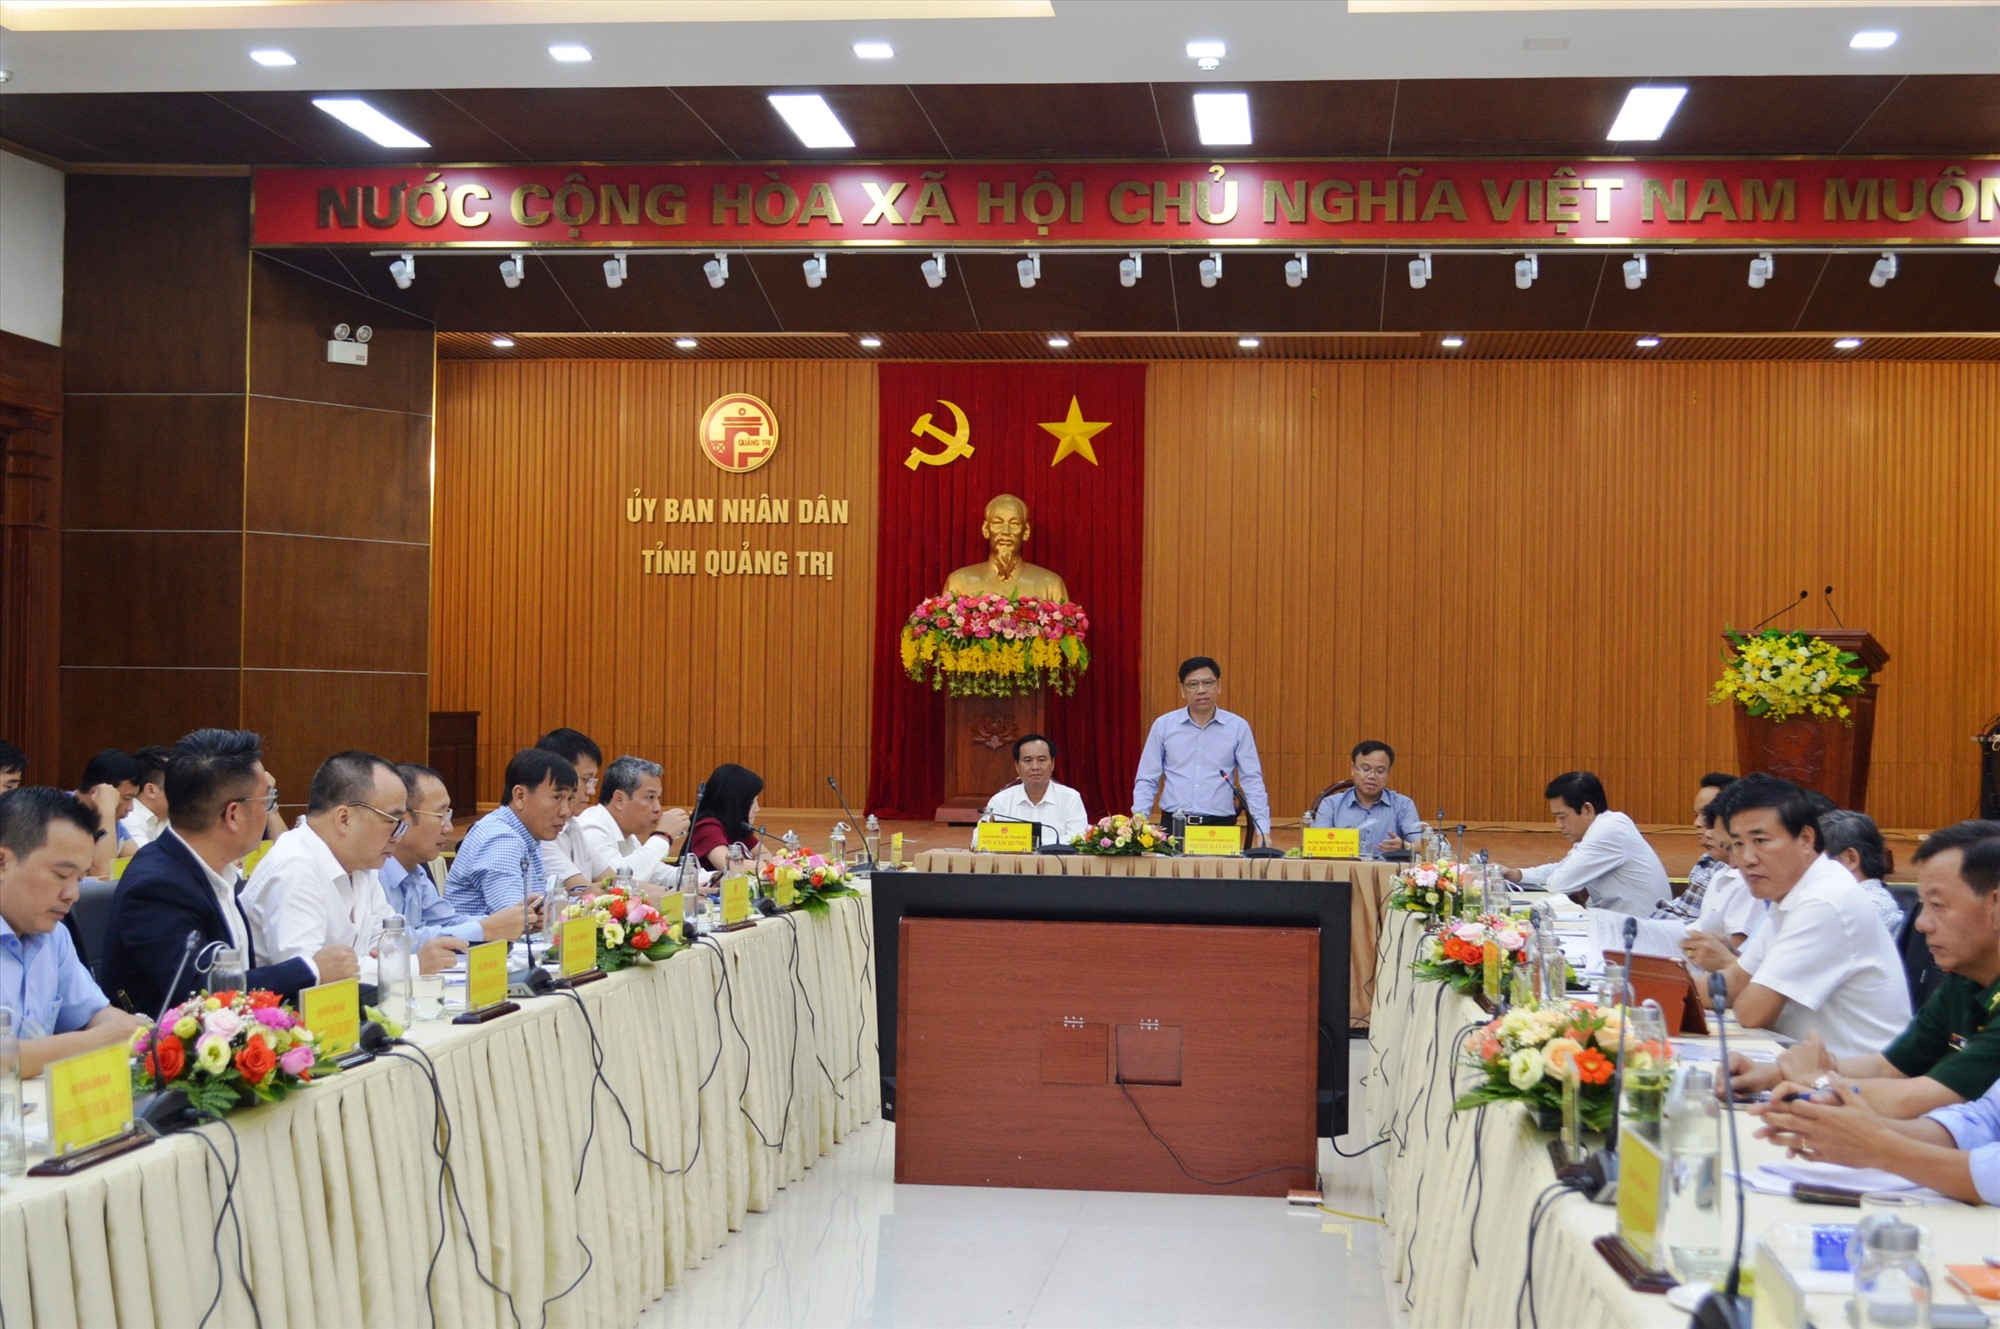 Thứ trưởng Bộ GTVT Nguyễn Xuân Sang phát biểu tại buổi làm việc với tỉnh Quảng Trị - Ảnh: ĐV